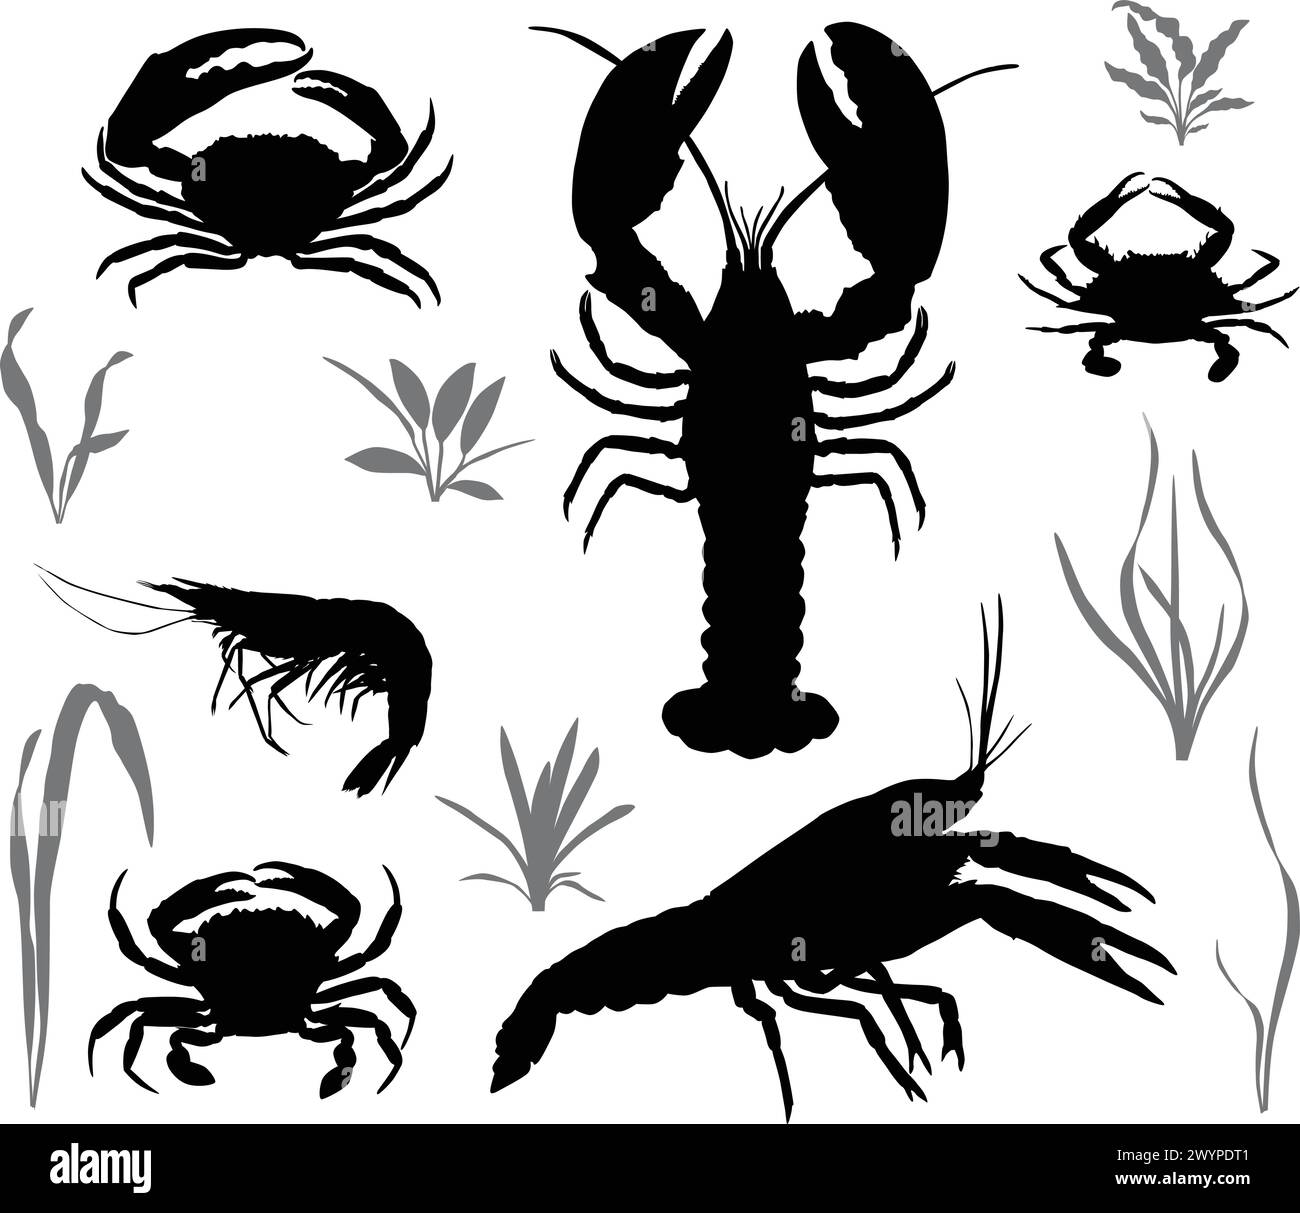 Silhouetten von vier Arten von Krebstieren: Krebse, Hummer, Krabben und Garnelen Stock Vektor